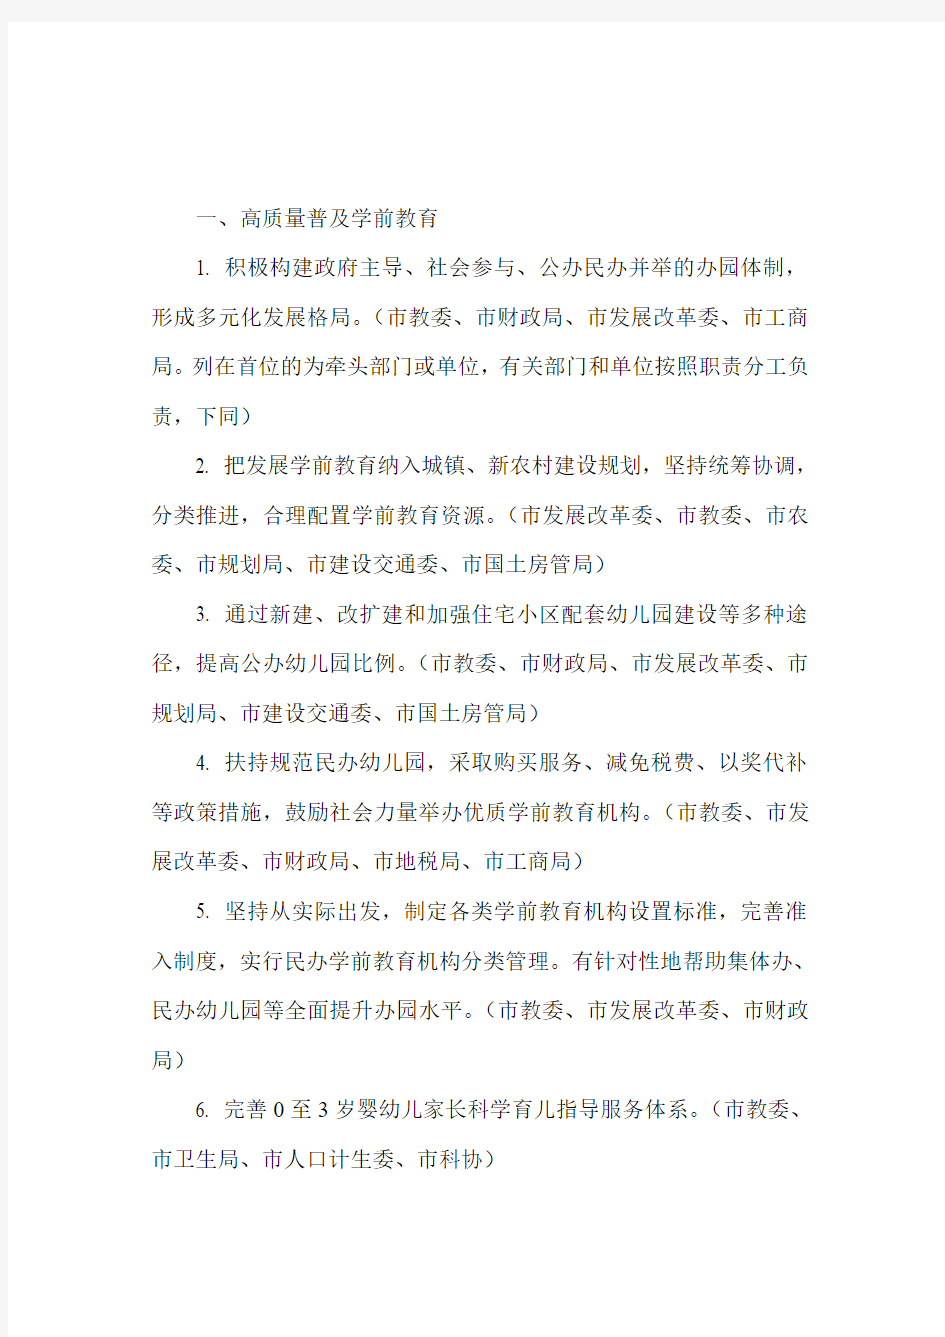 天津市人民政府办公厅关于印发天津市中长期教育改革和发展规划纲要(2010-2020年)任务分工方案的通知